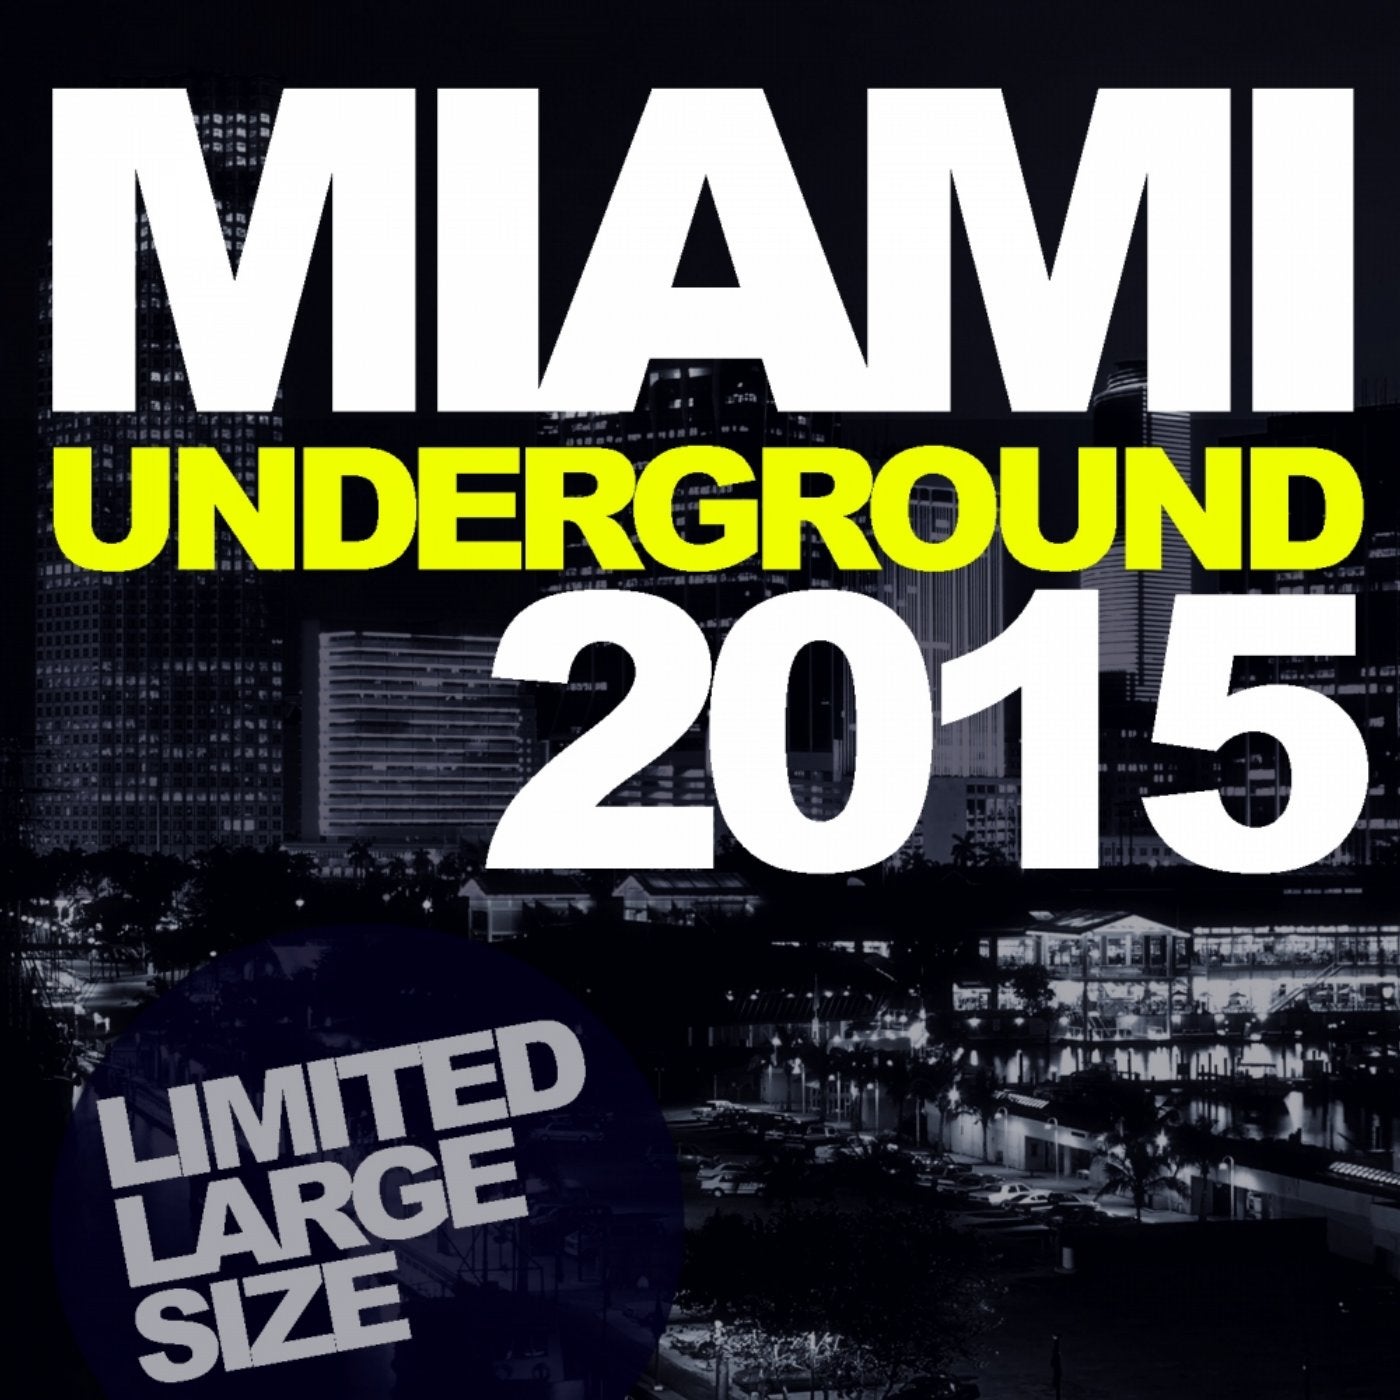 Miami Underground 2015: Limited Large Size